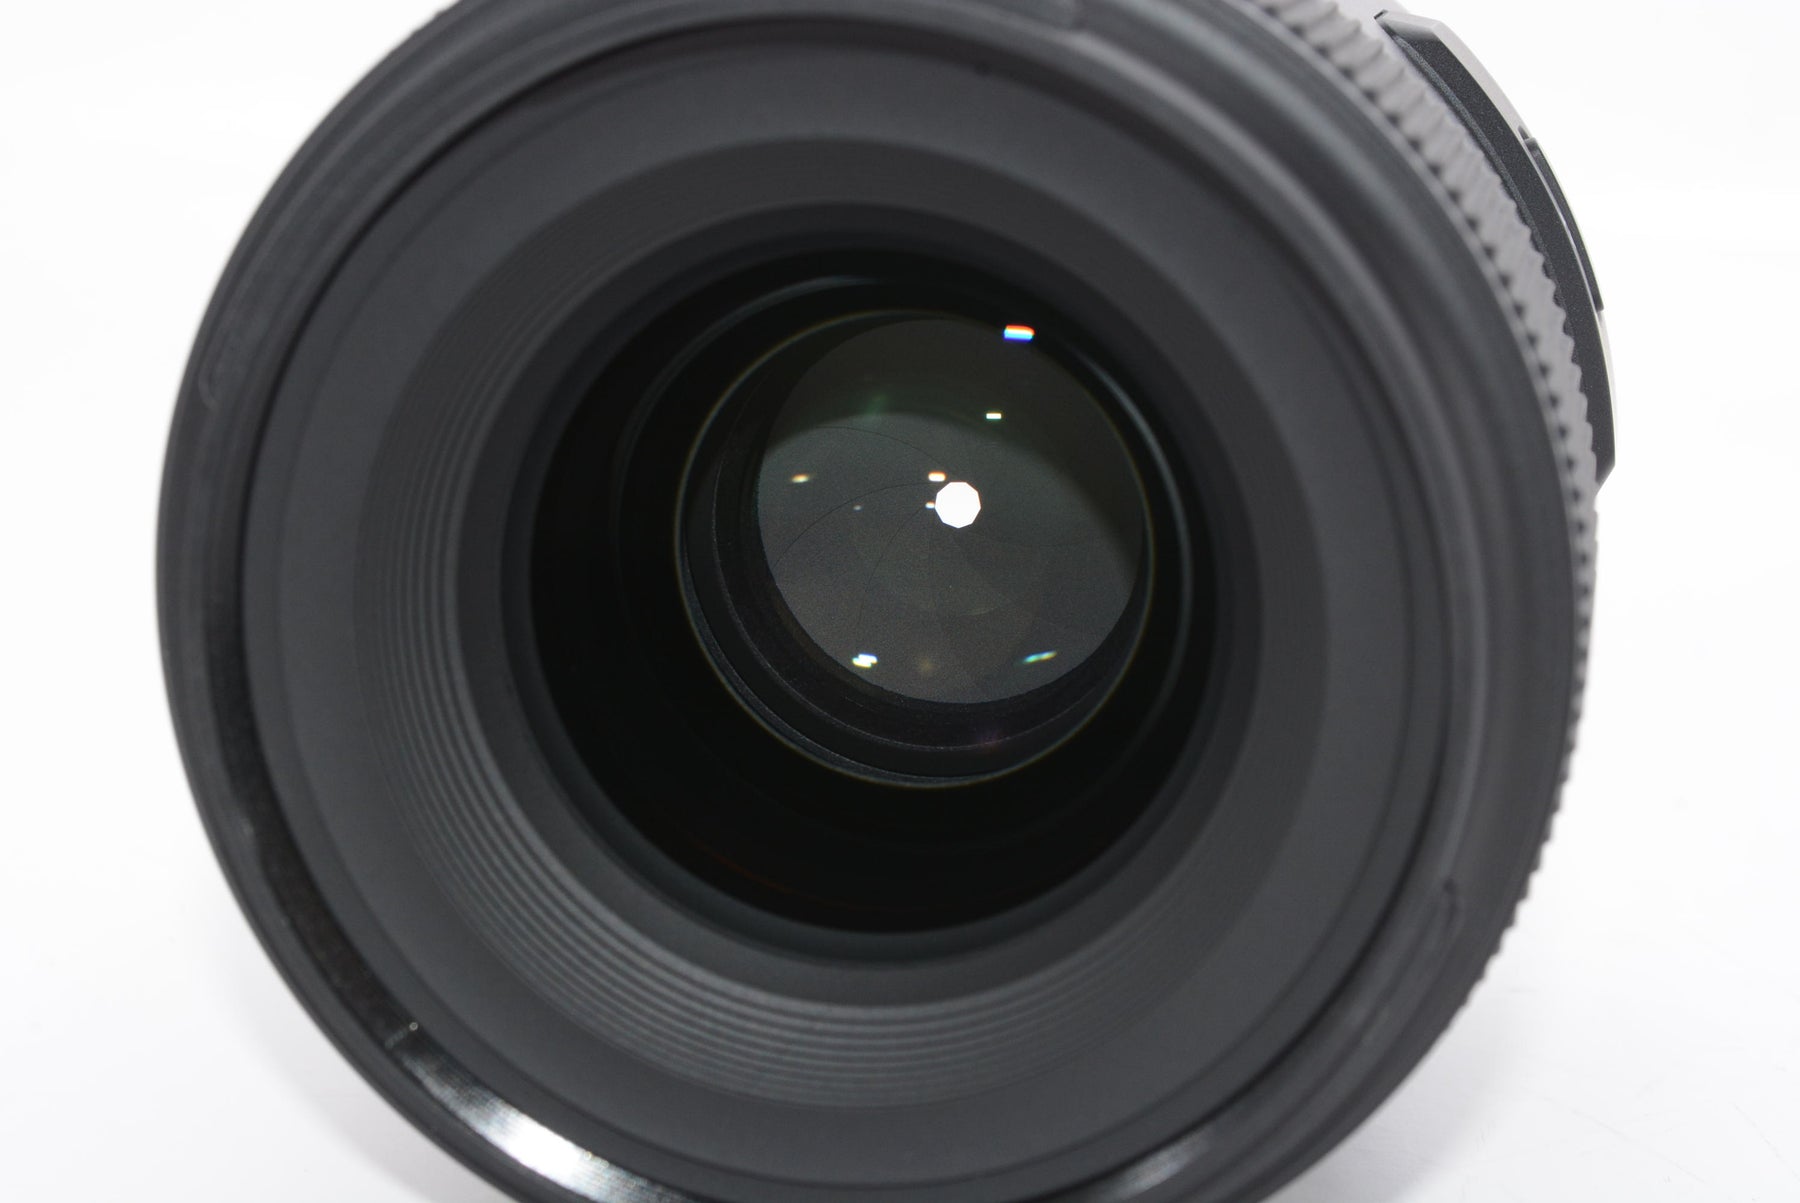 【外観特上級】TAMRON 単焦点レンズ SP45mm F1.8 Di ソニーAマウント用 フルサイズ対応 F013S